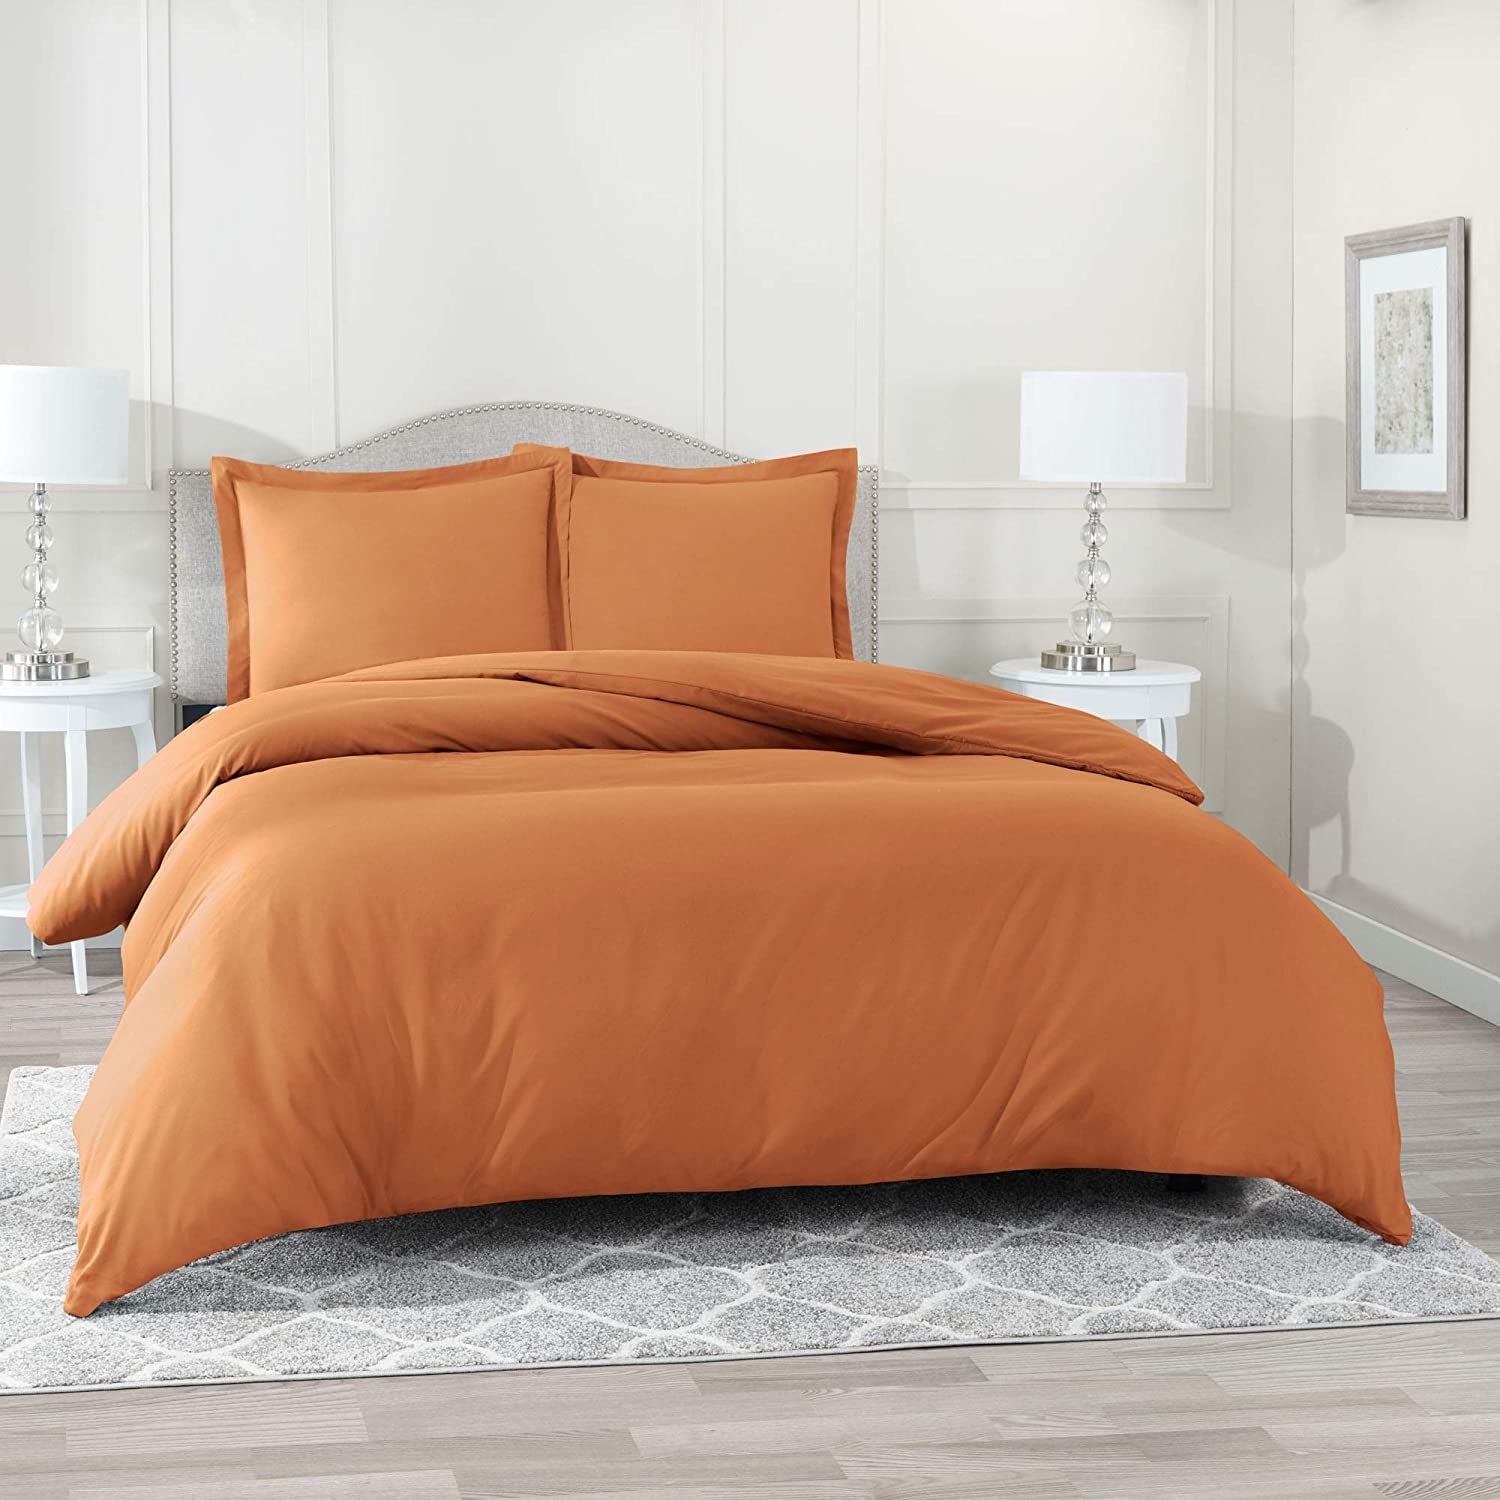 Buy Louis Vuitton Brands 12 Bedding Set Bed Sets, Bedroom Sets, Comforter  Sets, Duvet Cover, Bedspread